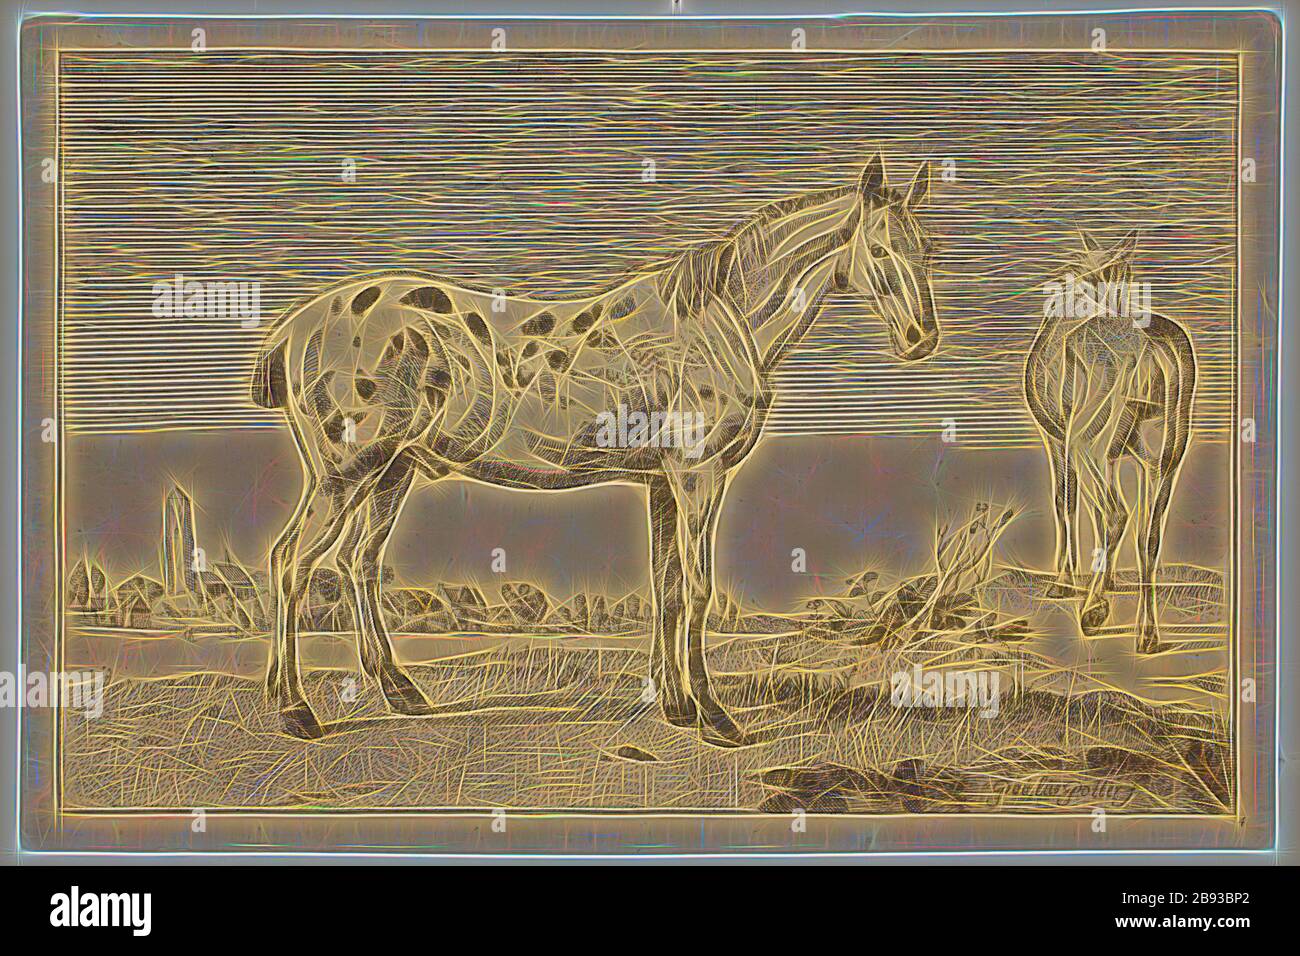 Artiste anonyme, après Paul Potter, néerlandais, 1625 - 1654, The Cropped Horse, 1652, copie 1887, gravure, gravure et roulette imprimée à l'encre noire sur papier ponté, plaque: 6 × 9 1/4 pouces (15.2 × 23.5 cm), repensée par Gibon, conception de glanissement chaleureux et de rayons de lumière. L'art classique réinventé avec une touche moderne. La photographie inspirée du futurisme, qui embrasse l'énergie dynamique de la technologie moderne, du mouvement, de la vitesse et révolutionne la culture. Banque D'Images